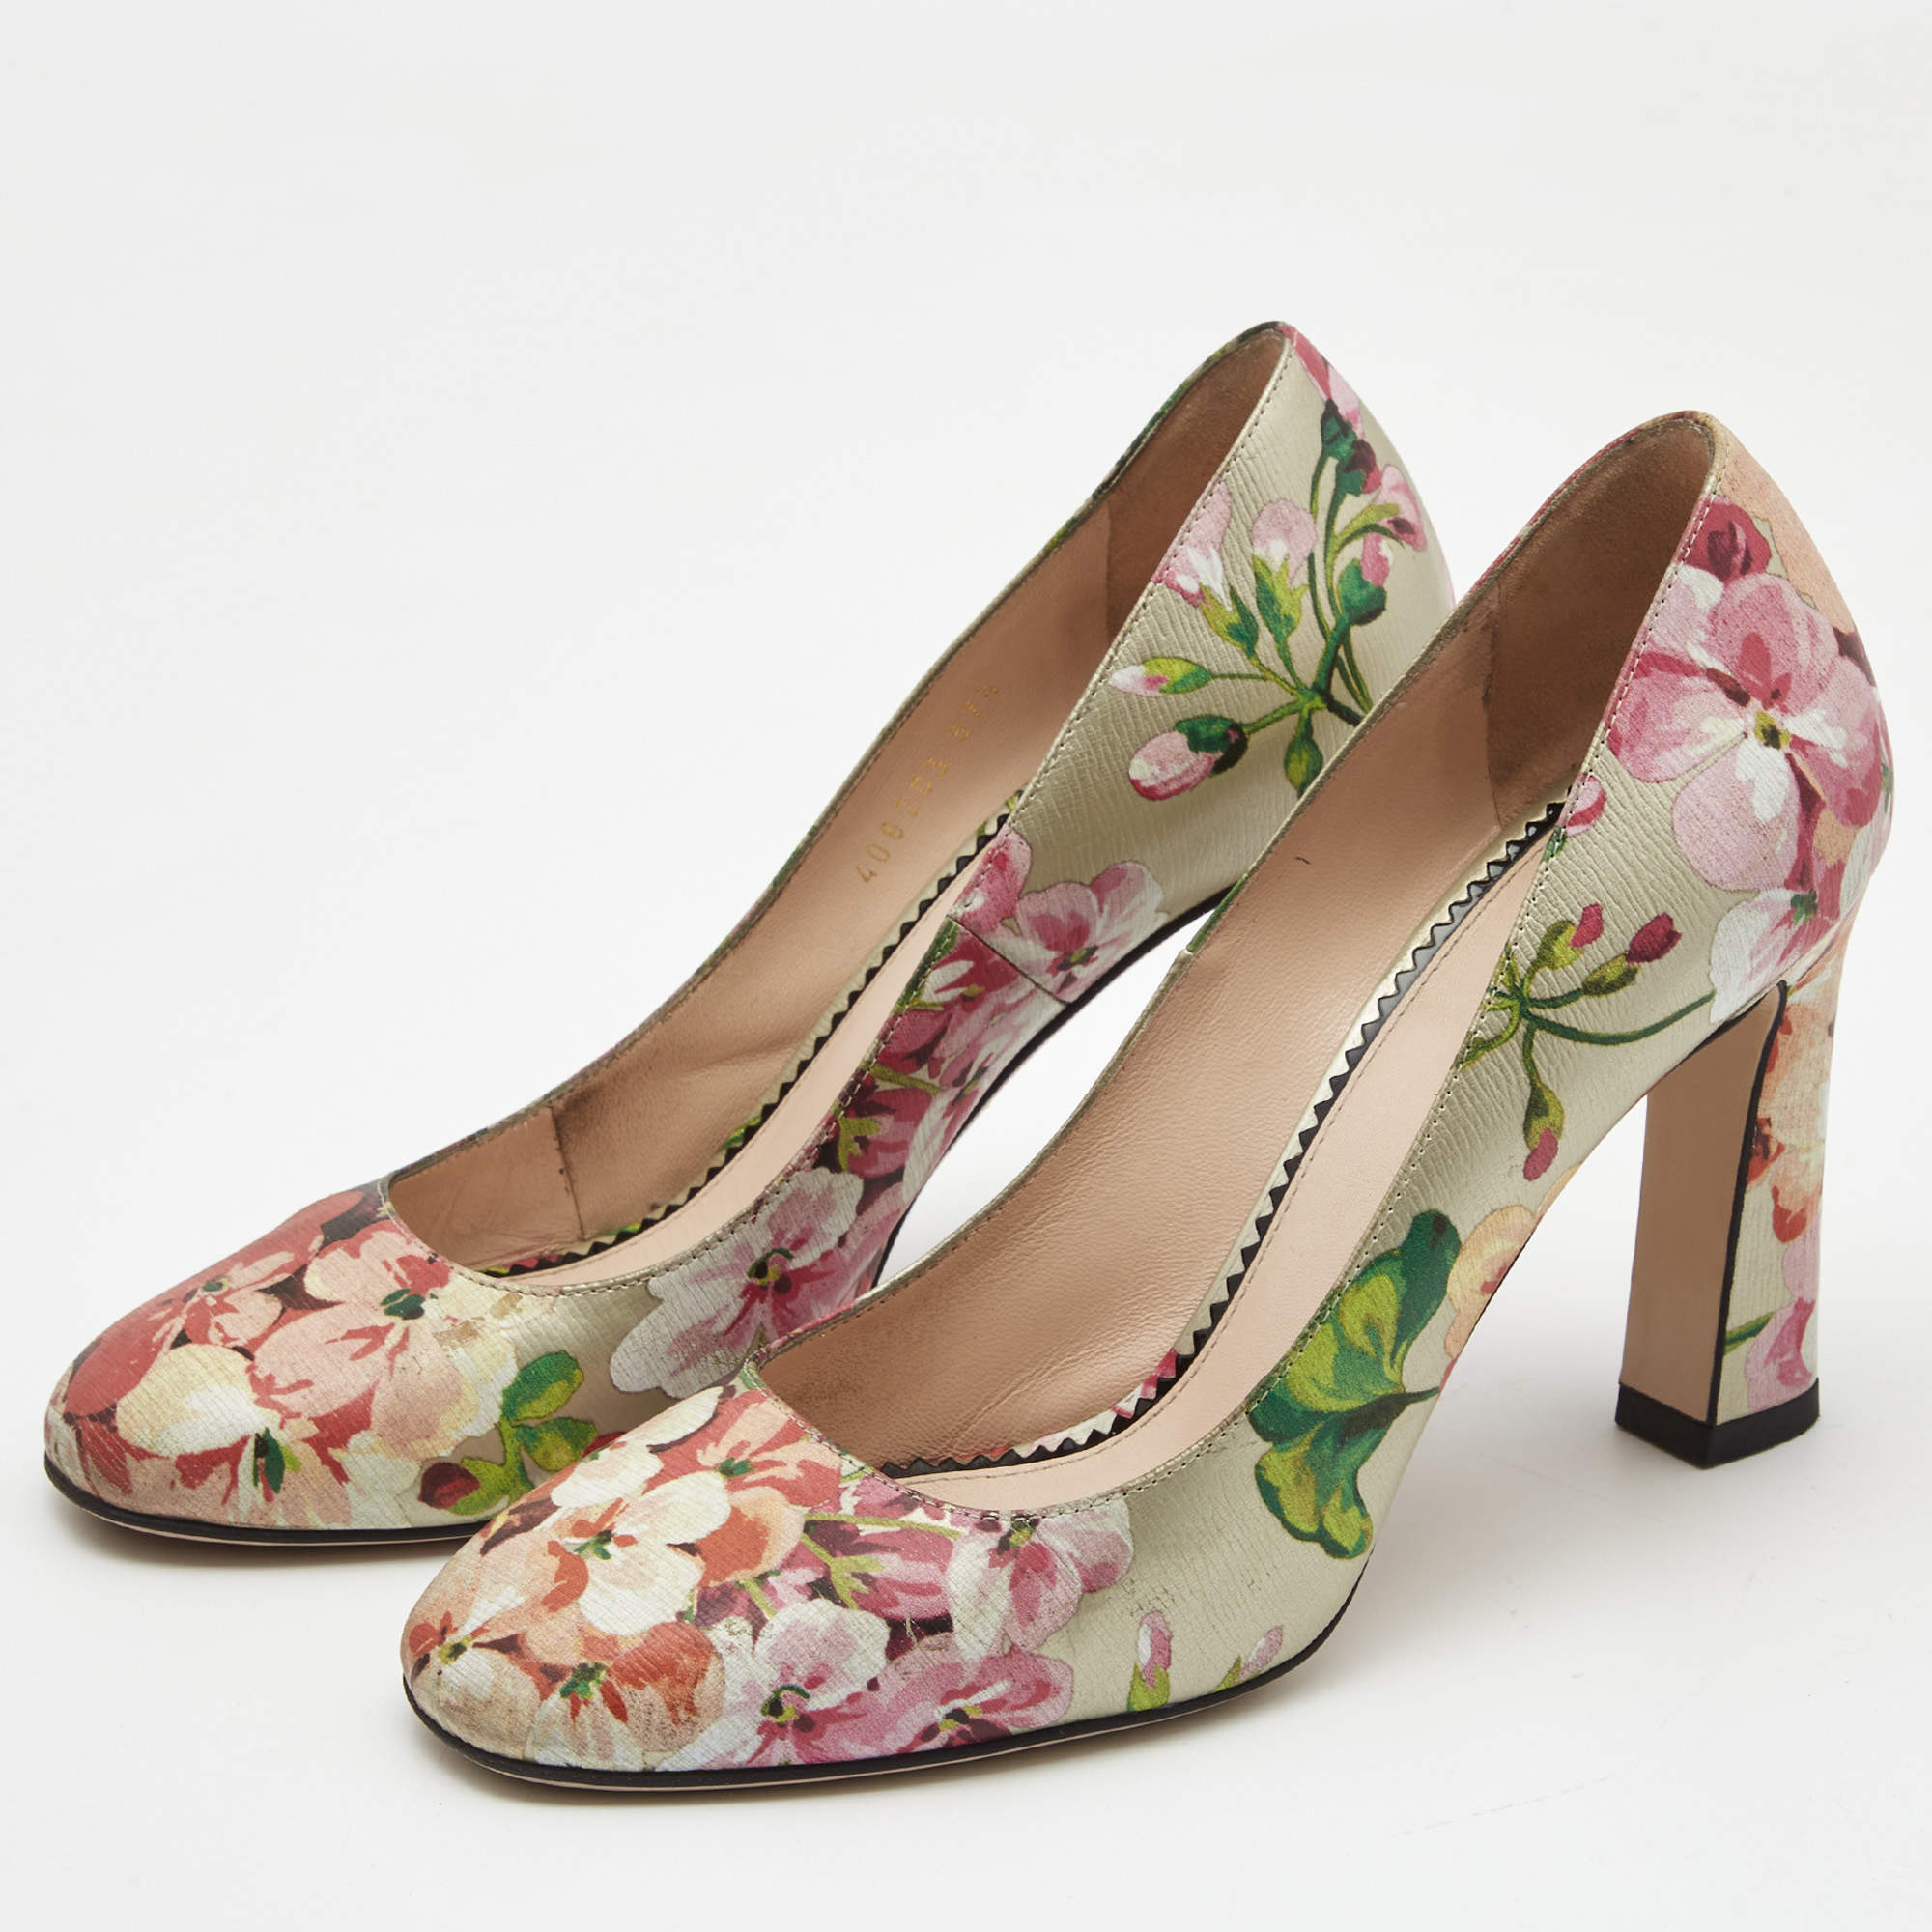 Floral Heels Ankle Strap Open Toe Women's Block Heel Sandals | Heels, Sandals  heels, Block heels sandal